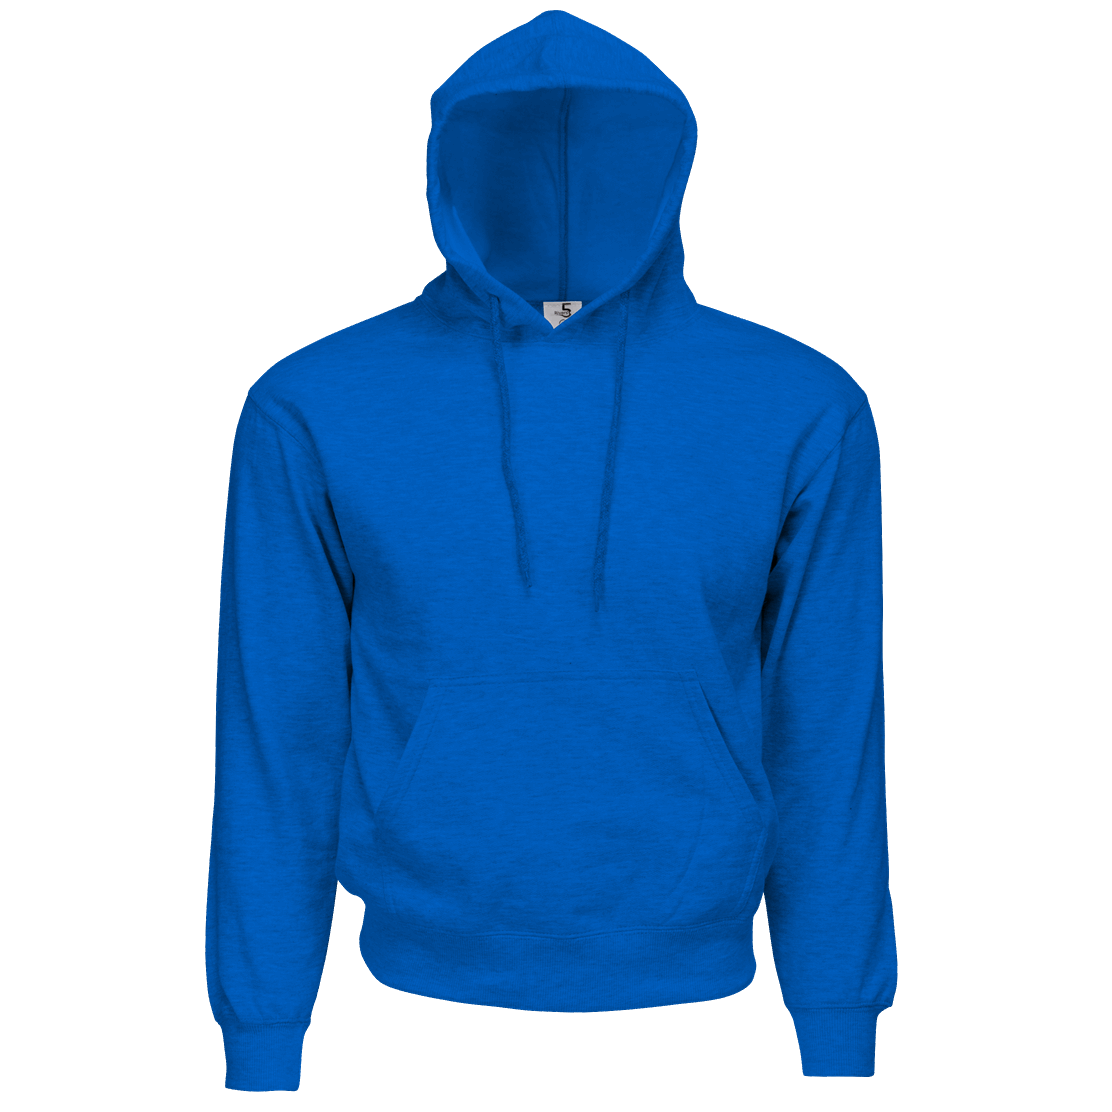 sweatshirt clipart blue hoodie